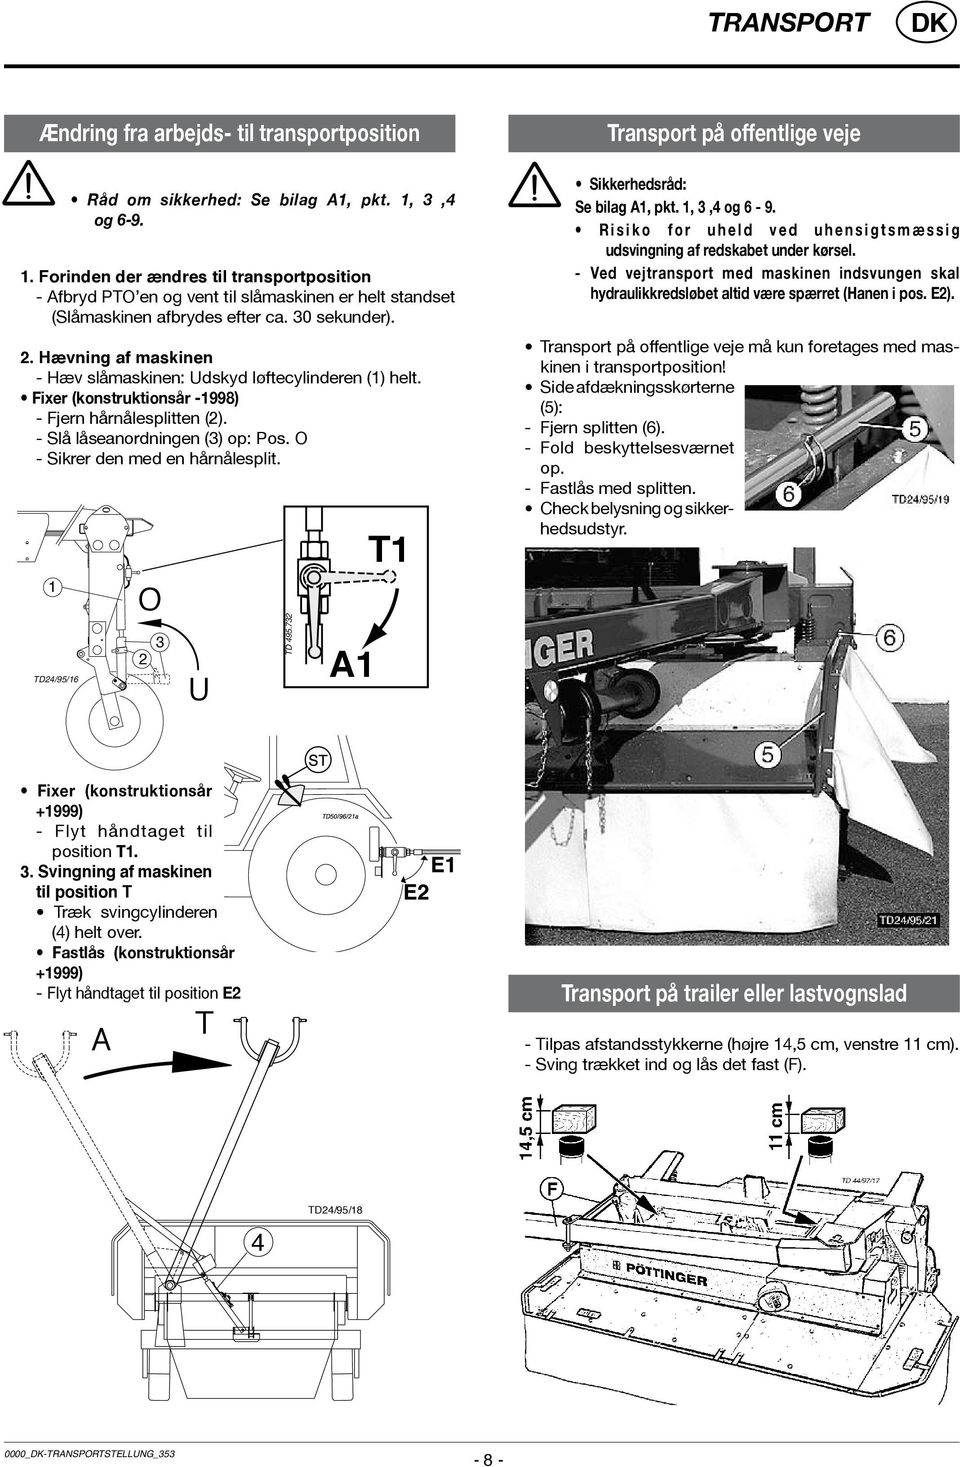 Hævning af maskinen - Hæv slåmaskinen: Udskyd løftecylinderen (1) helt. Fixer (konstruktionsår -1998) - Fjern hårnålesplitten (2). - Slå låseanordningen (3) op: Pos.